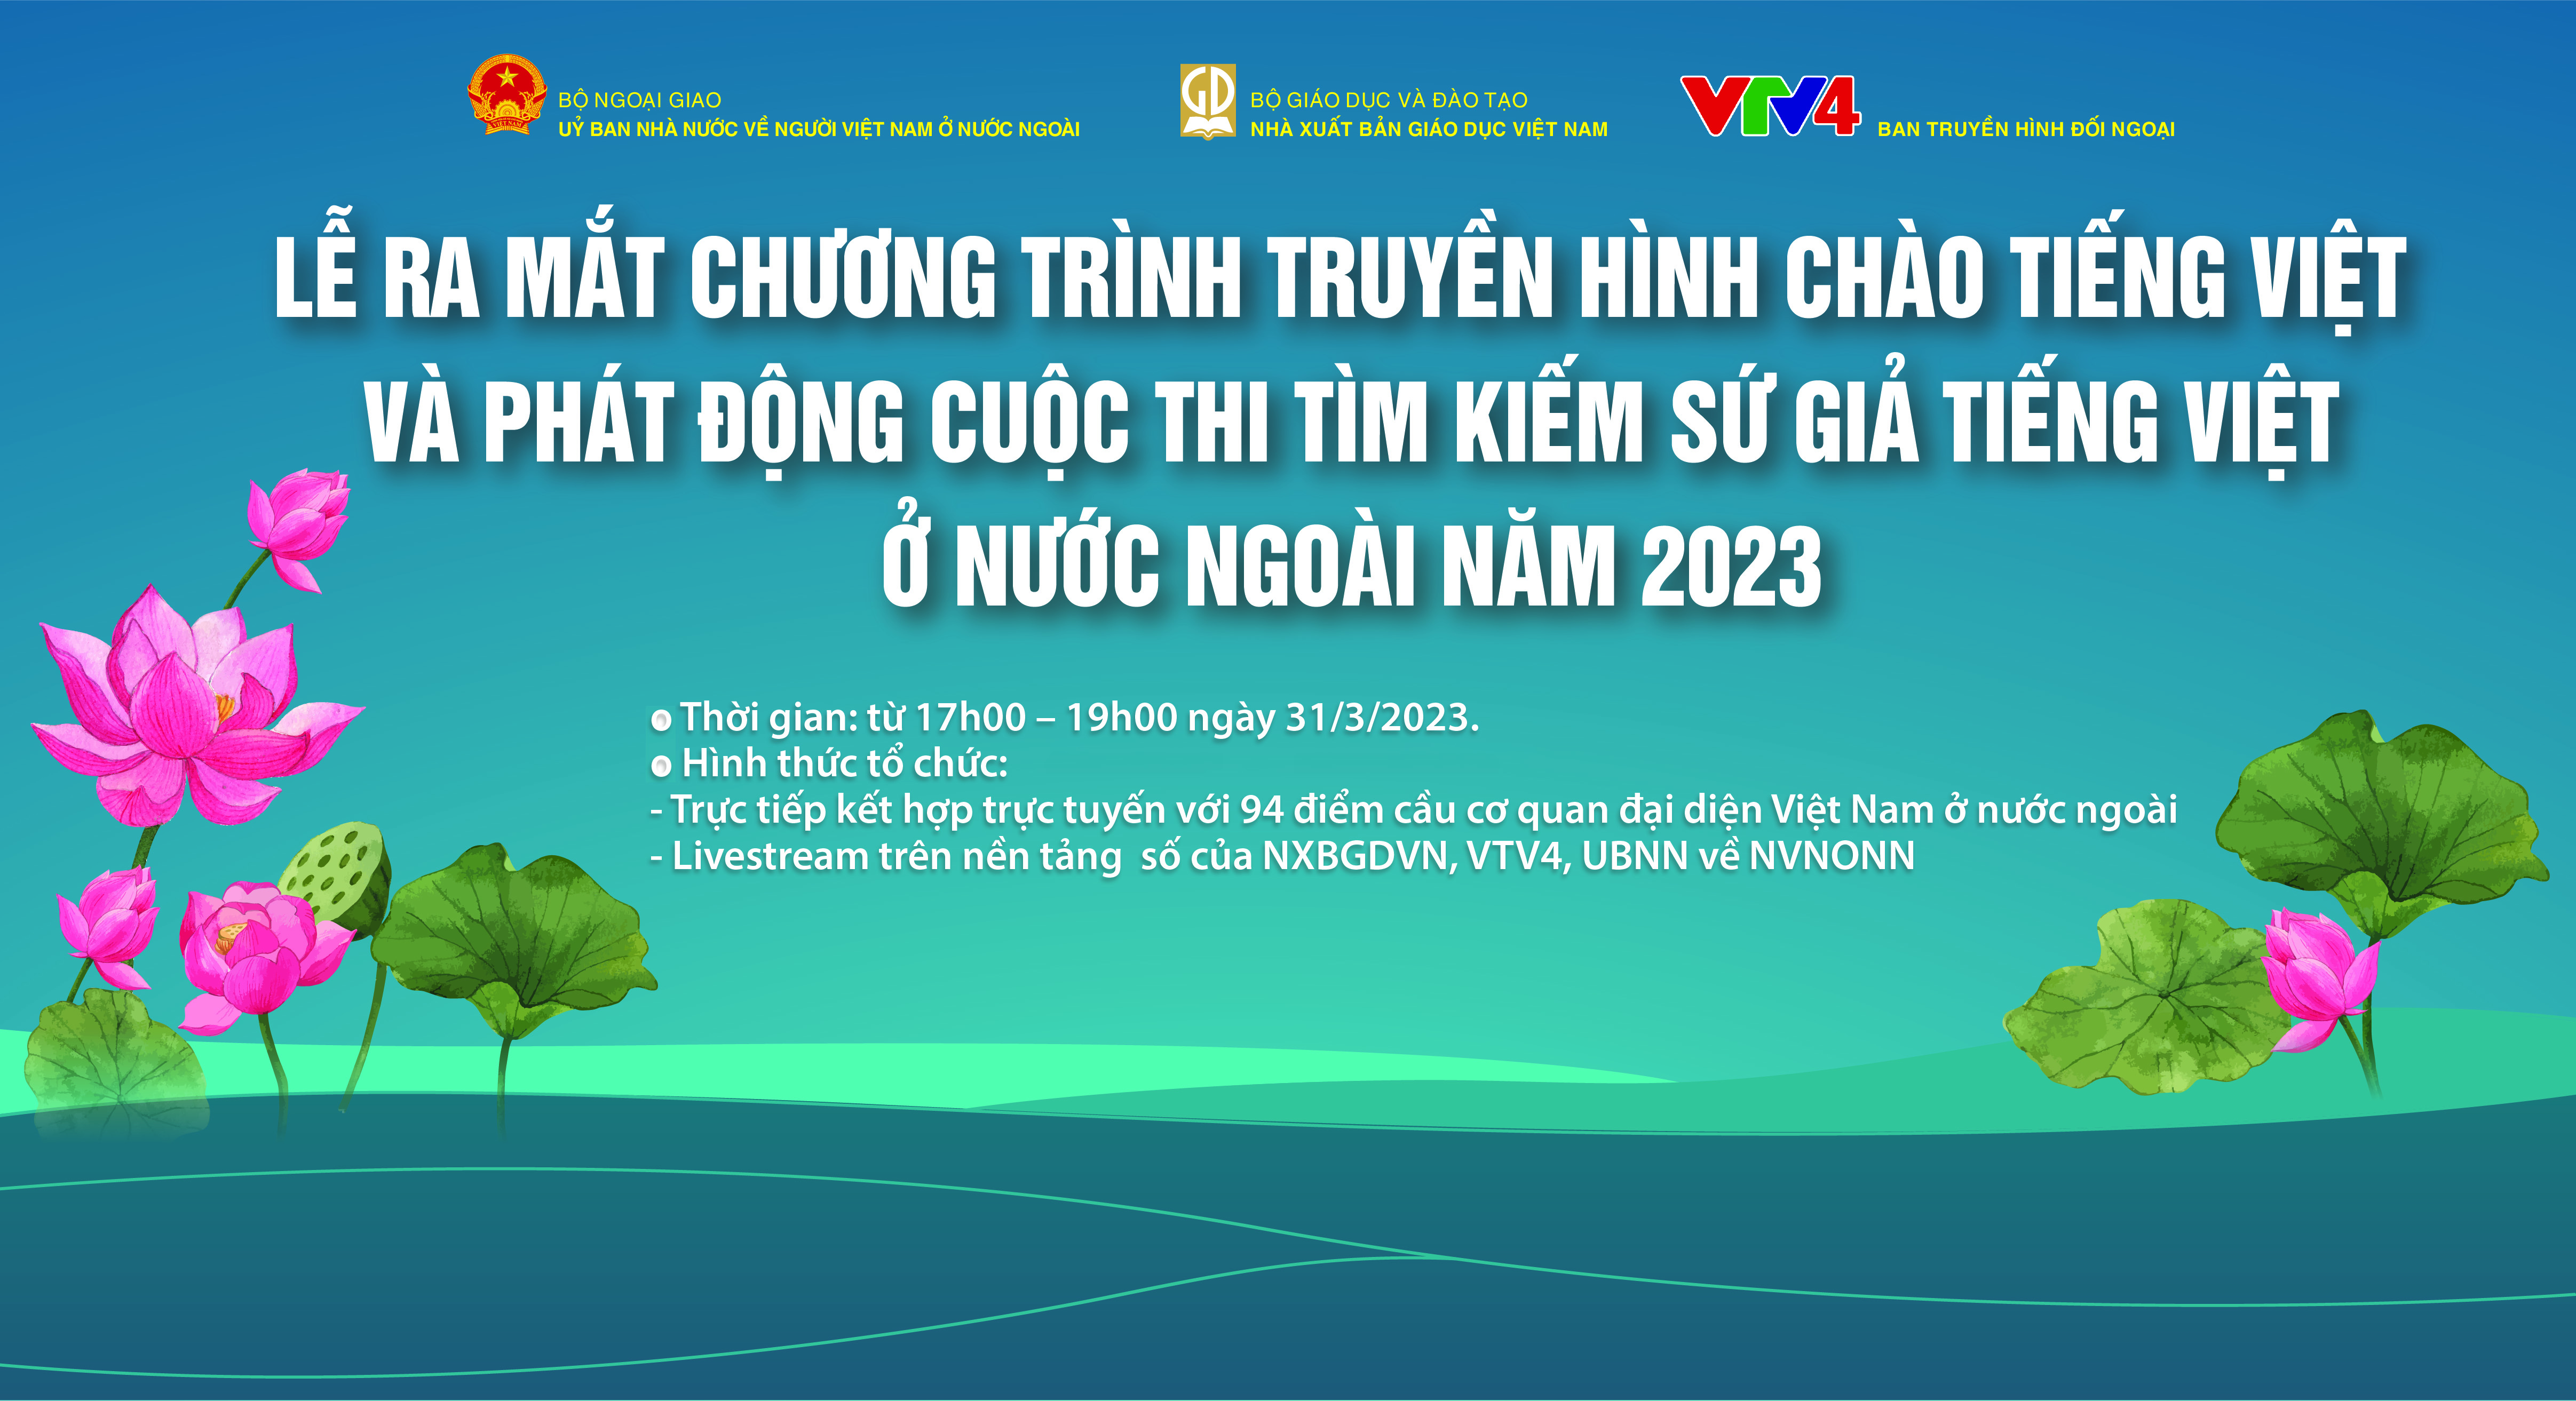 Chương trình truyền hình Chào tiếng Việt -Tôn vinh văn hoá Việt Nam ở nước ngoài